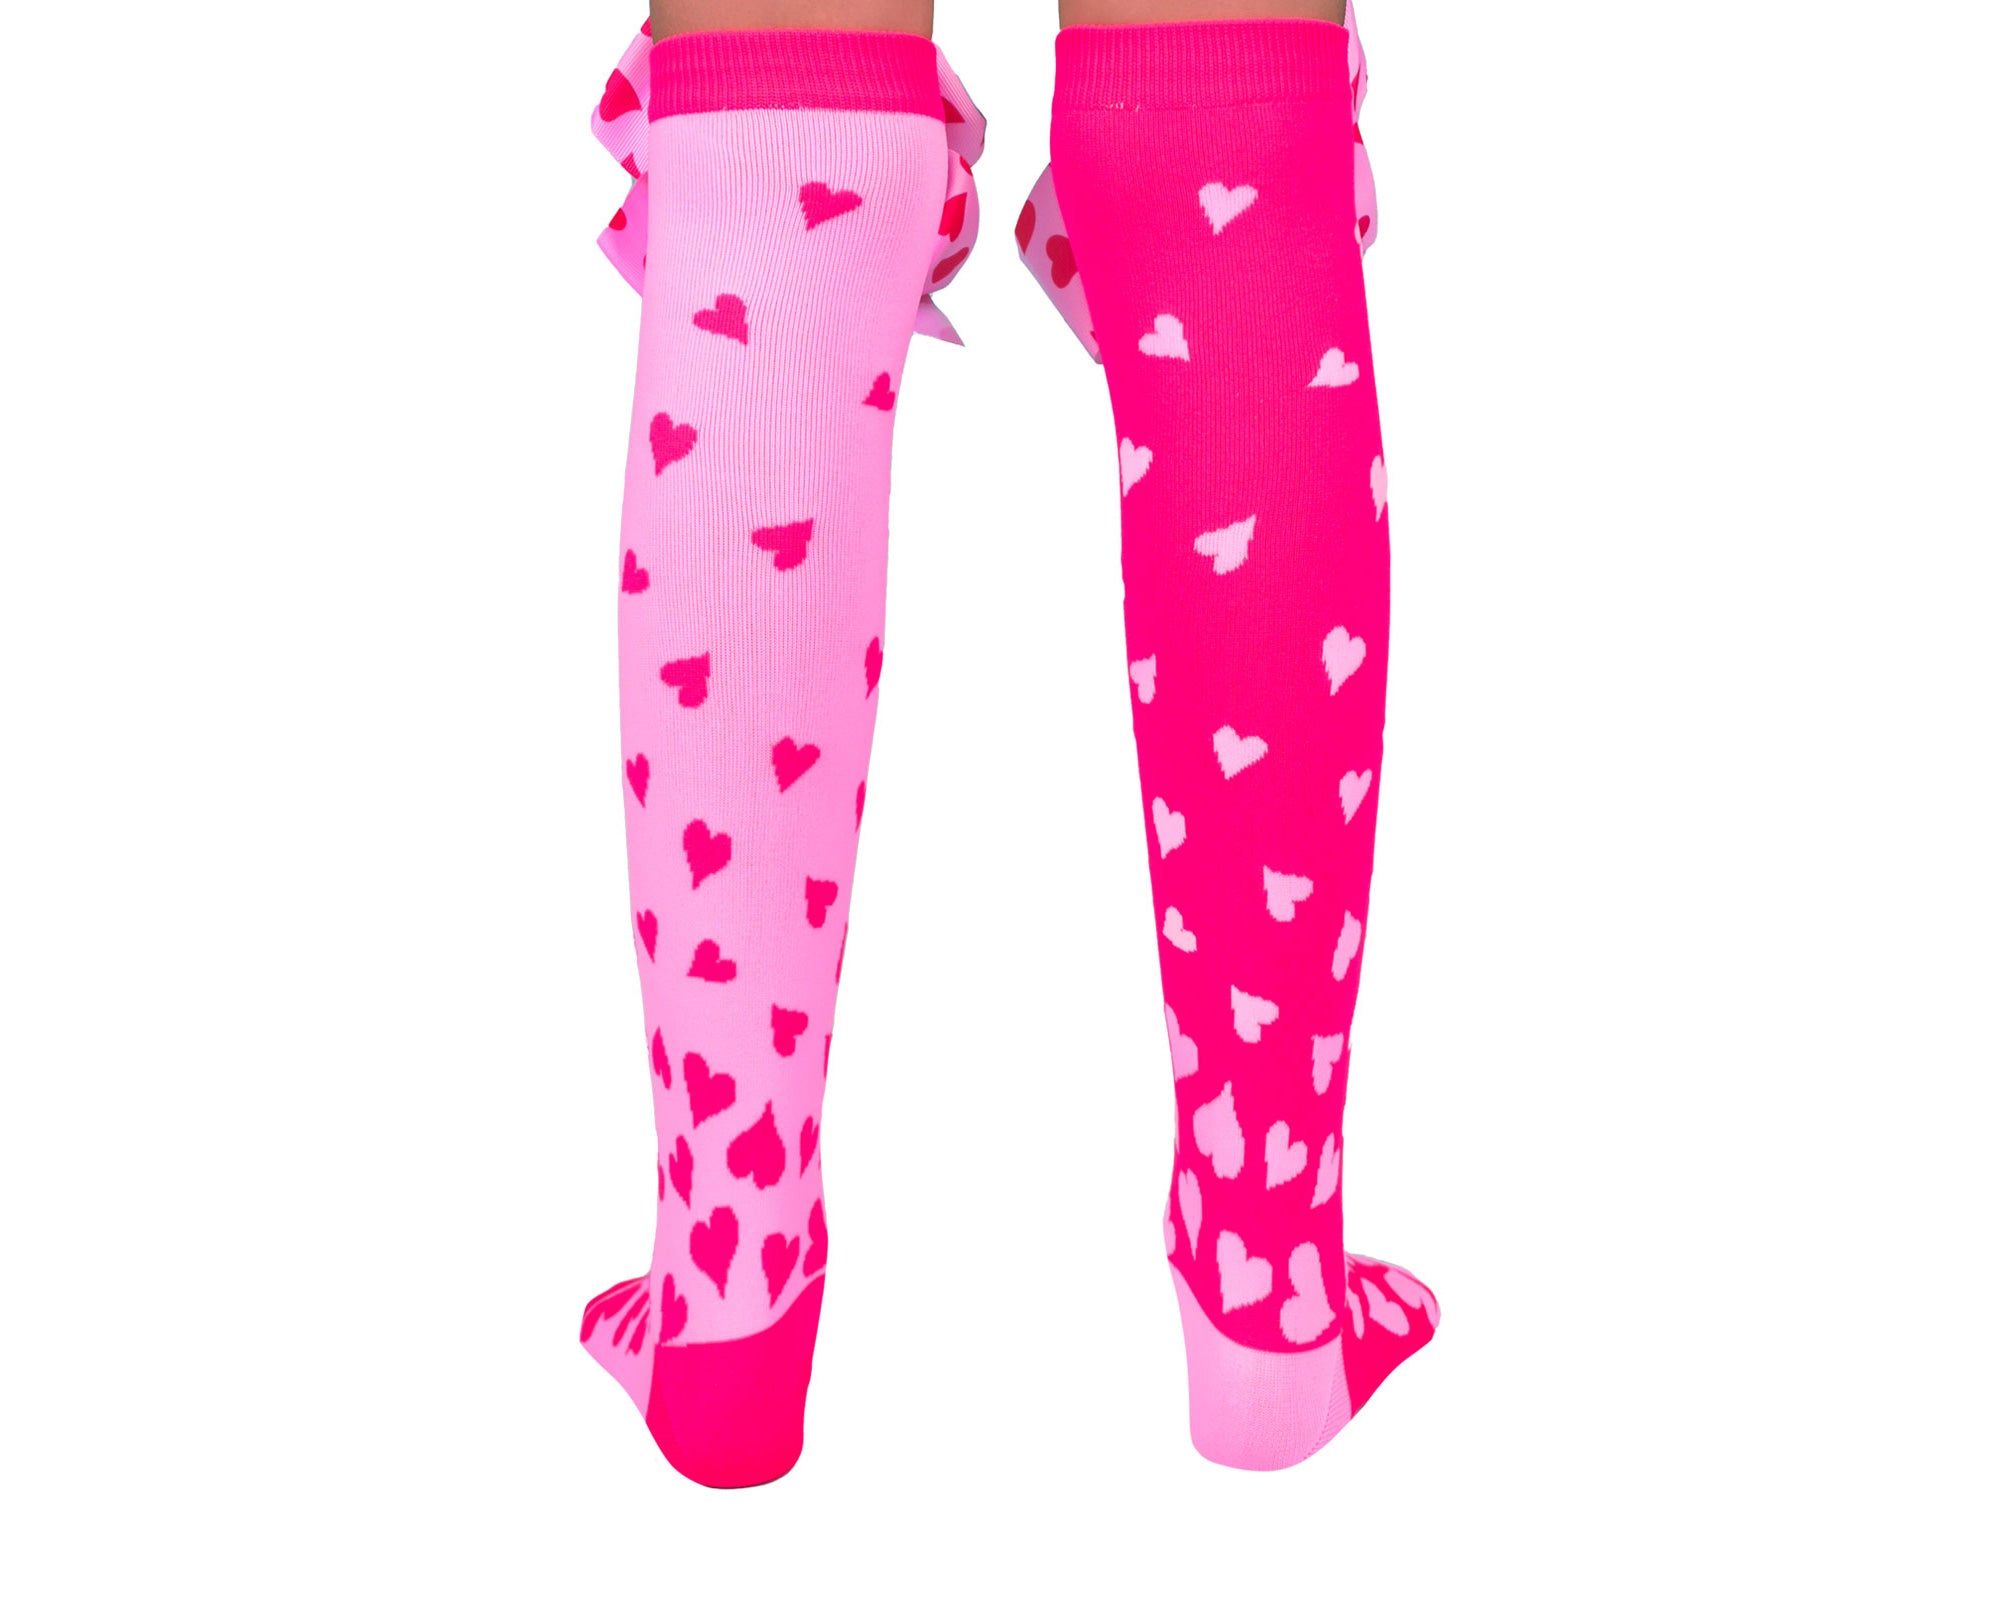 Si vous cherchez une façon amusante et ludique d'ajouter un peu d'amour et d'éclat à votre tenue, les chaussettes Love Hearts Fun sont le choix parfait.